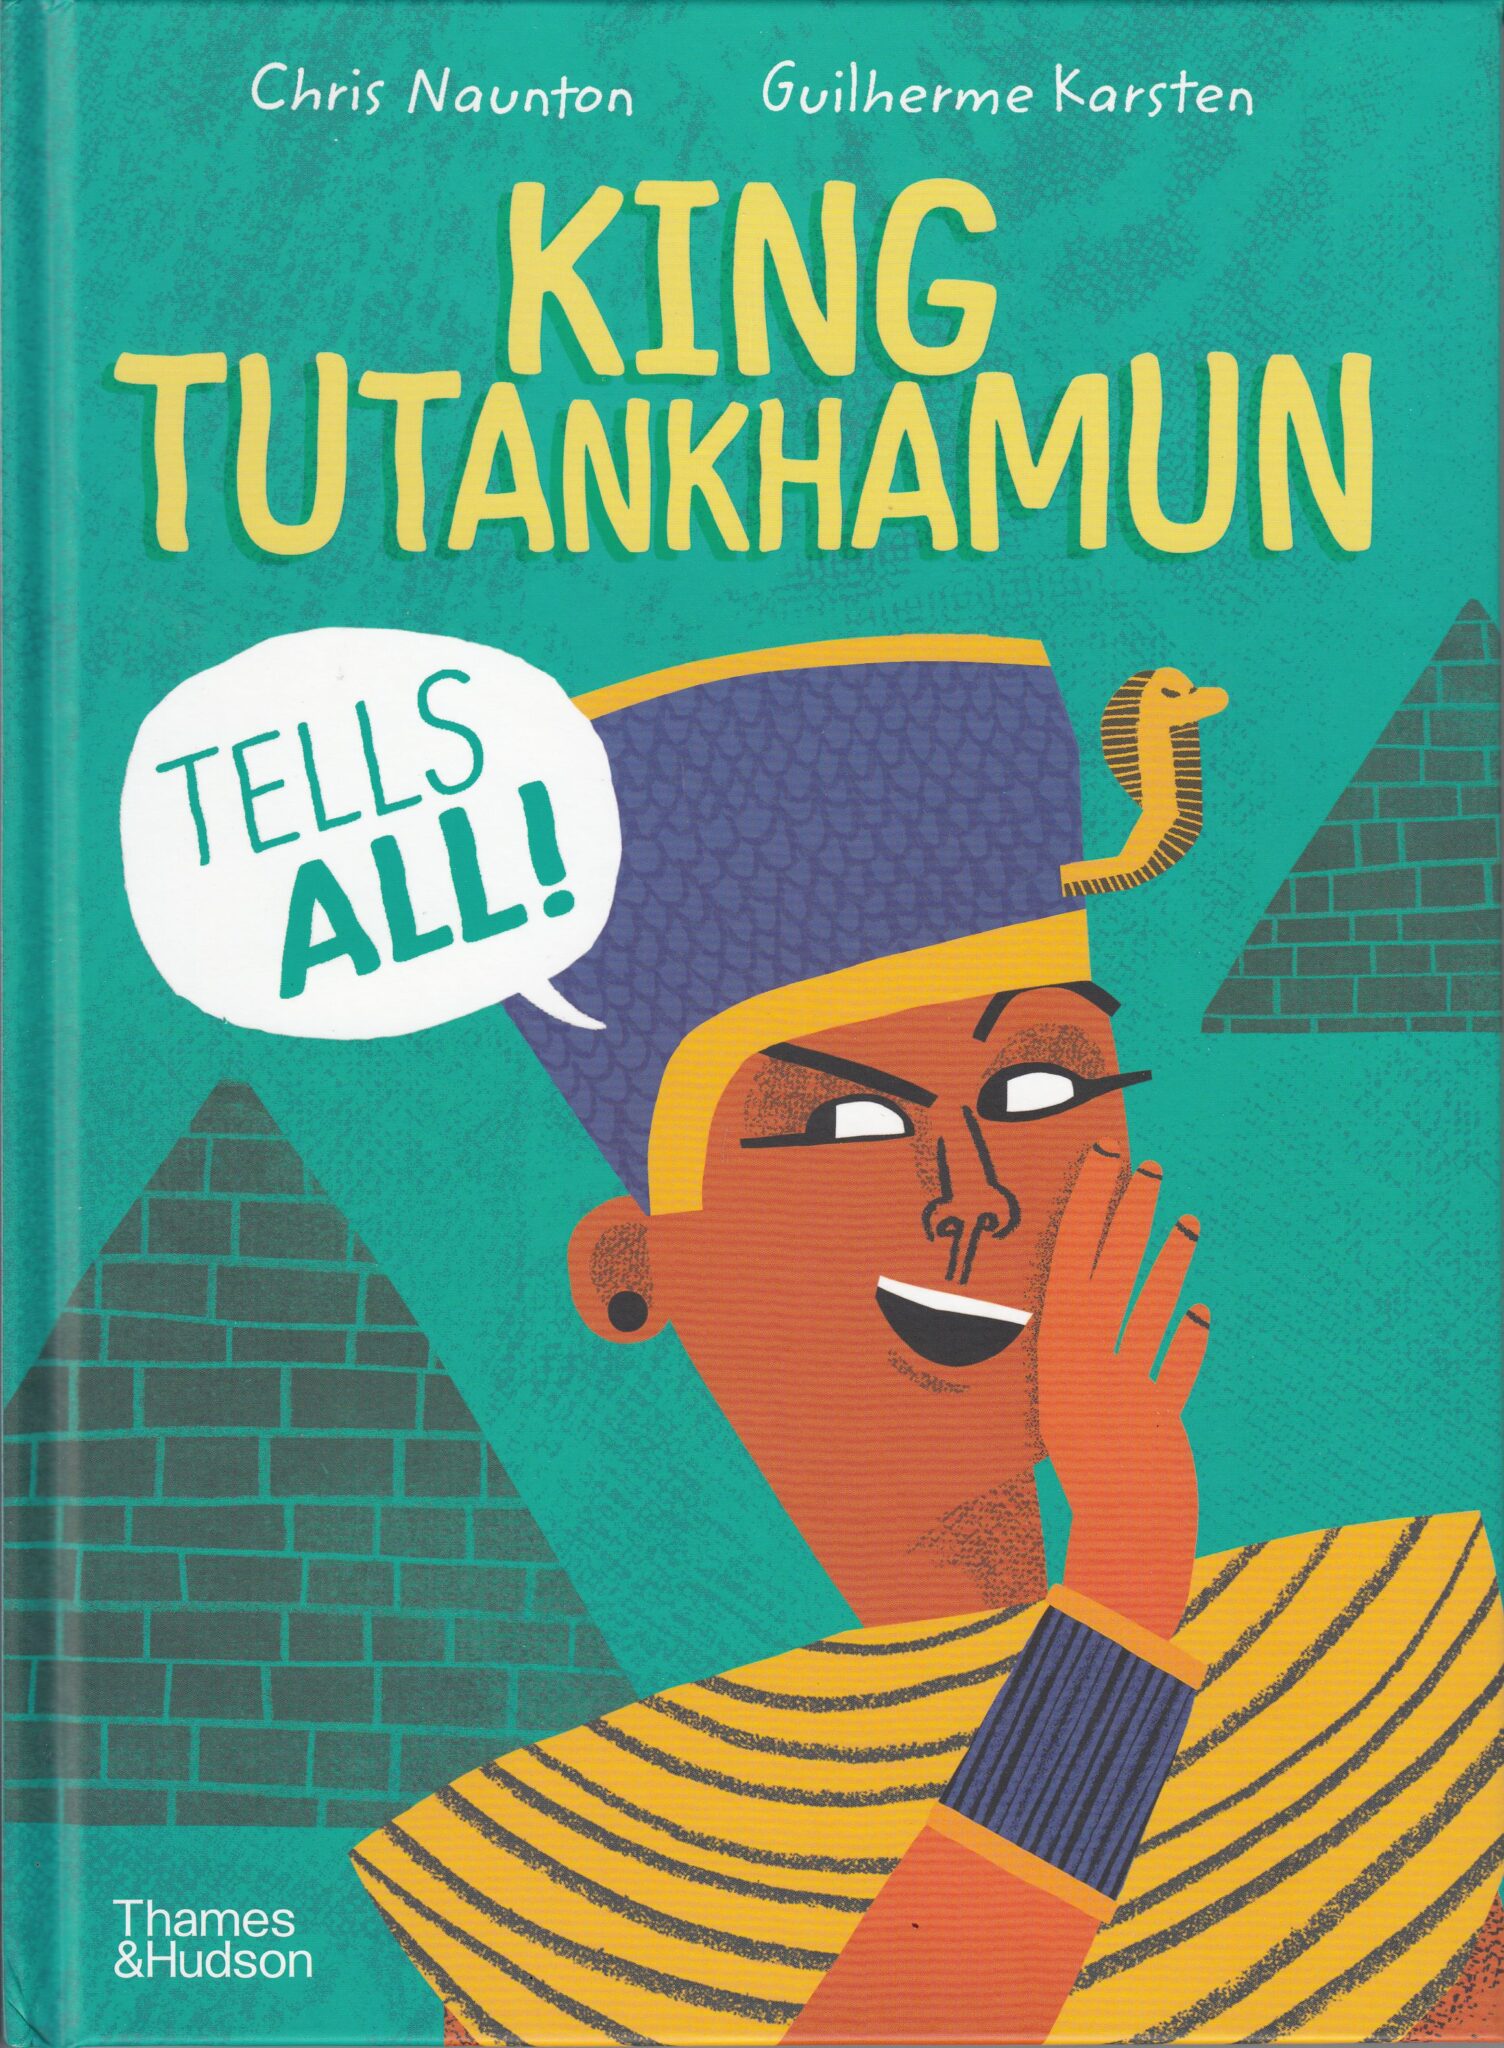 King Tutankhamun Tells All!image